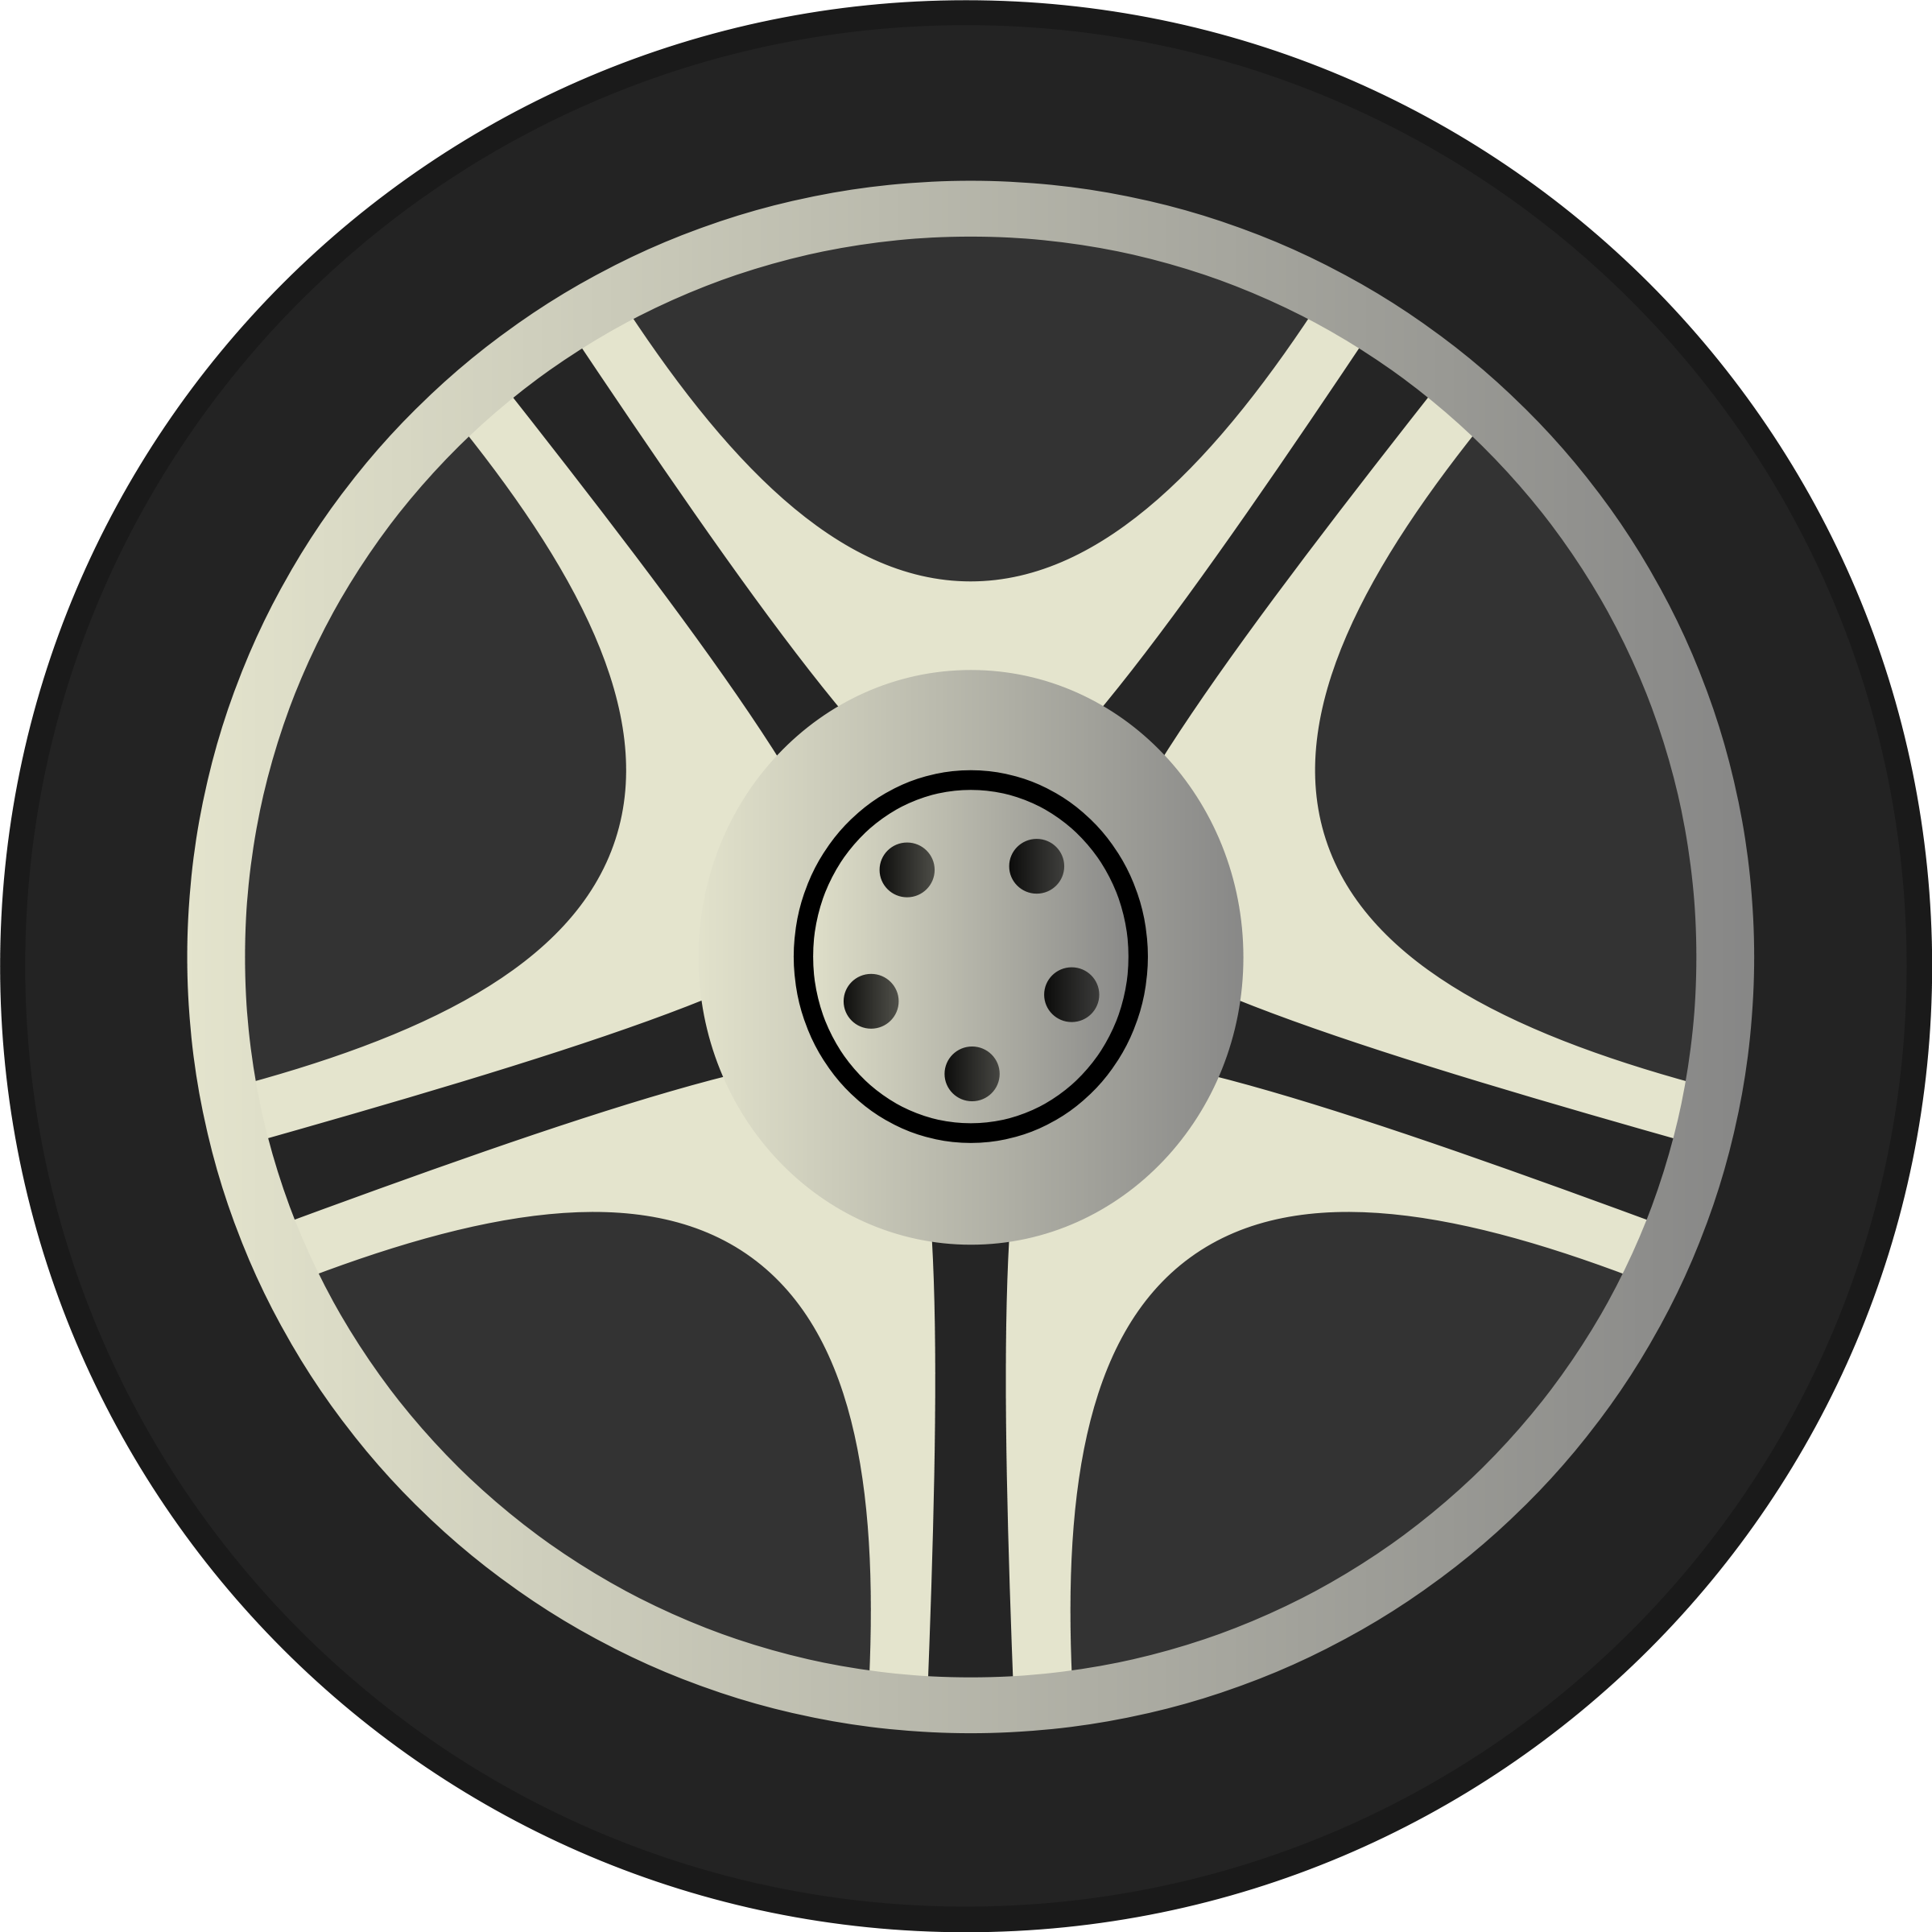 Автомобильное колесо PNG изображения фон